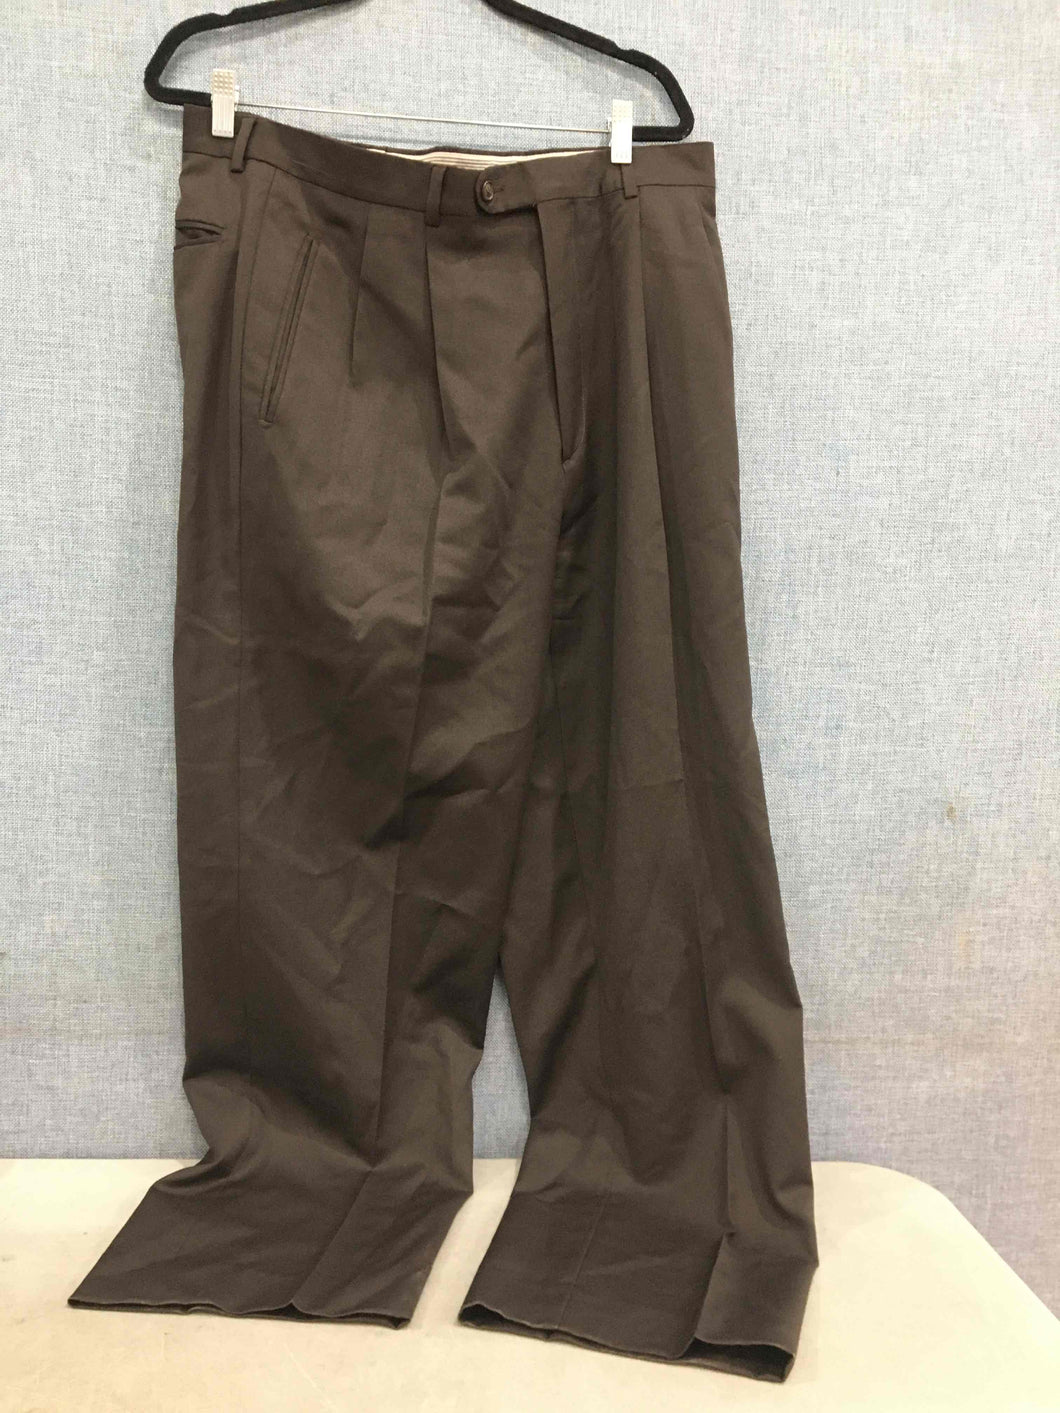 Manzini Men's Dark Brown Pants Size Unknown